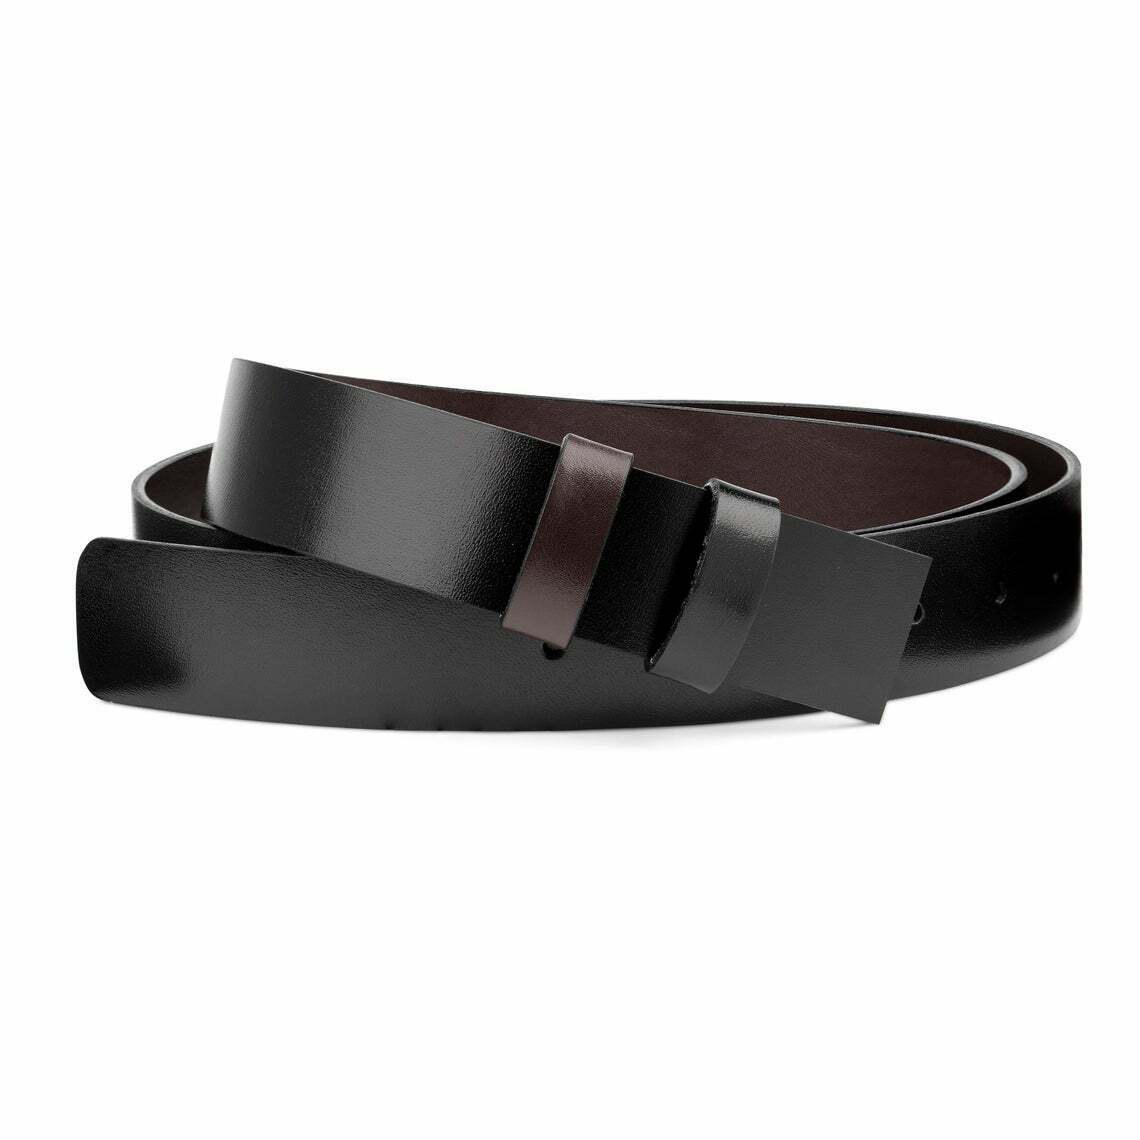 Reversible Belt Mens Leather Strap For Cartier Belts 35mm Black Brown 1 3-8''